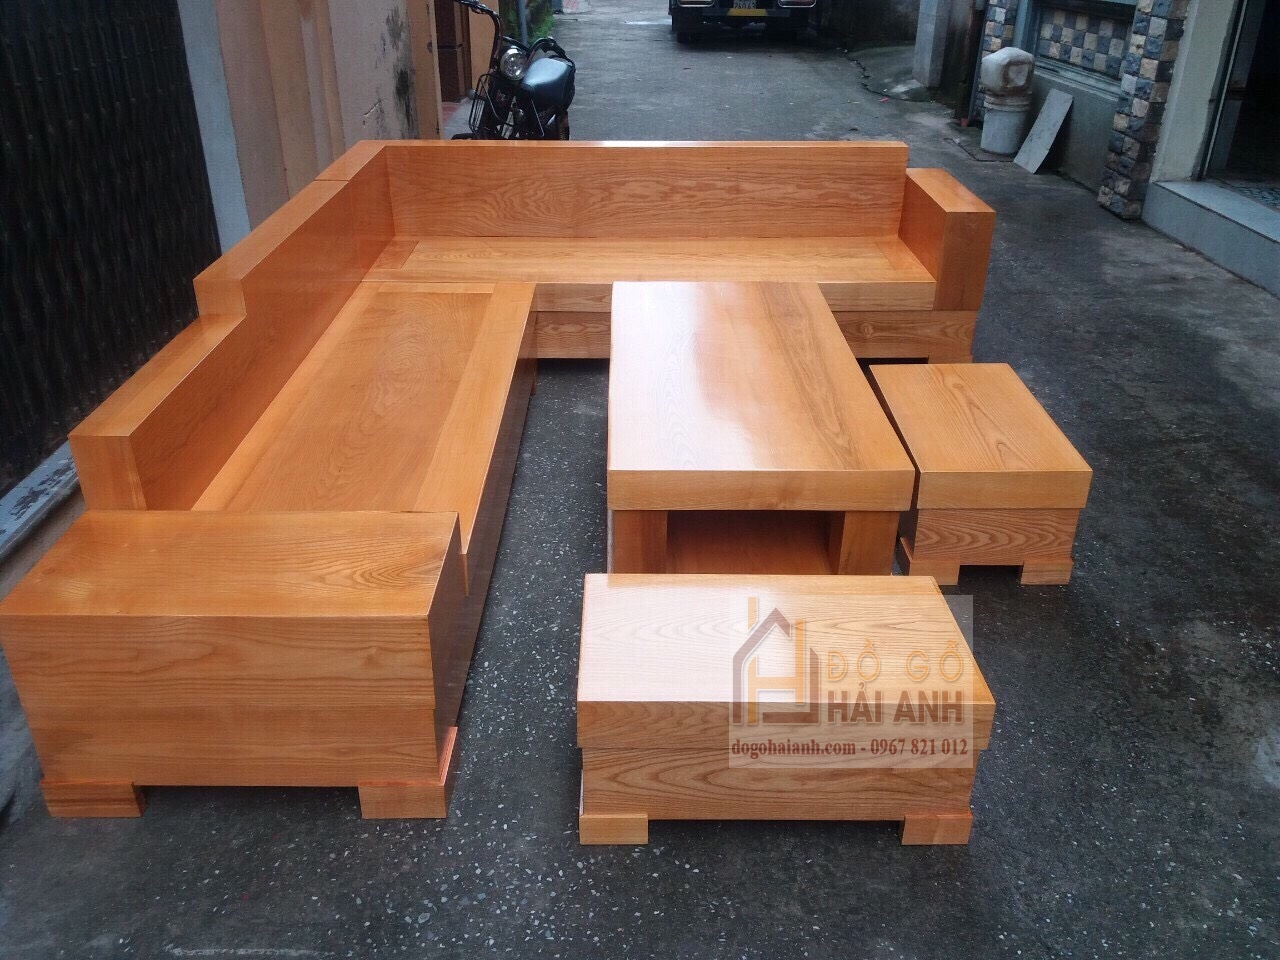 Nếu bạn đang tìm kiếm một chiếc Sofa gỗ góc giá rẻ chất lượng ở TPHCM, thì đây chính là lựa chọn tốt nhất cho bạn. Với chất liệu gỗ cao cấp và thiết kế đơn giản, chiếc Sofa gỗ góc này sẽ làm nổi bật không gian sống của bạn mà không làm giảm chất lượng. Hãy xem hình ảnh để khám phá những trải nghiệm tuyệt vời mà chiếc Sofa gỗ góc giá rẻ chất lượng này sẽ mang lại cho bạn.